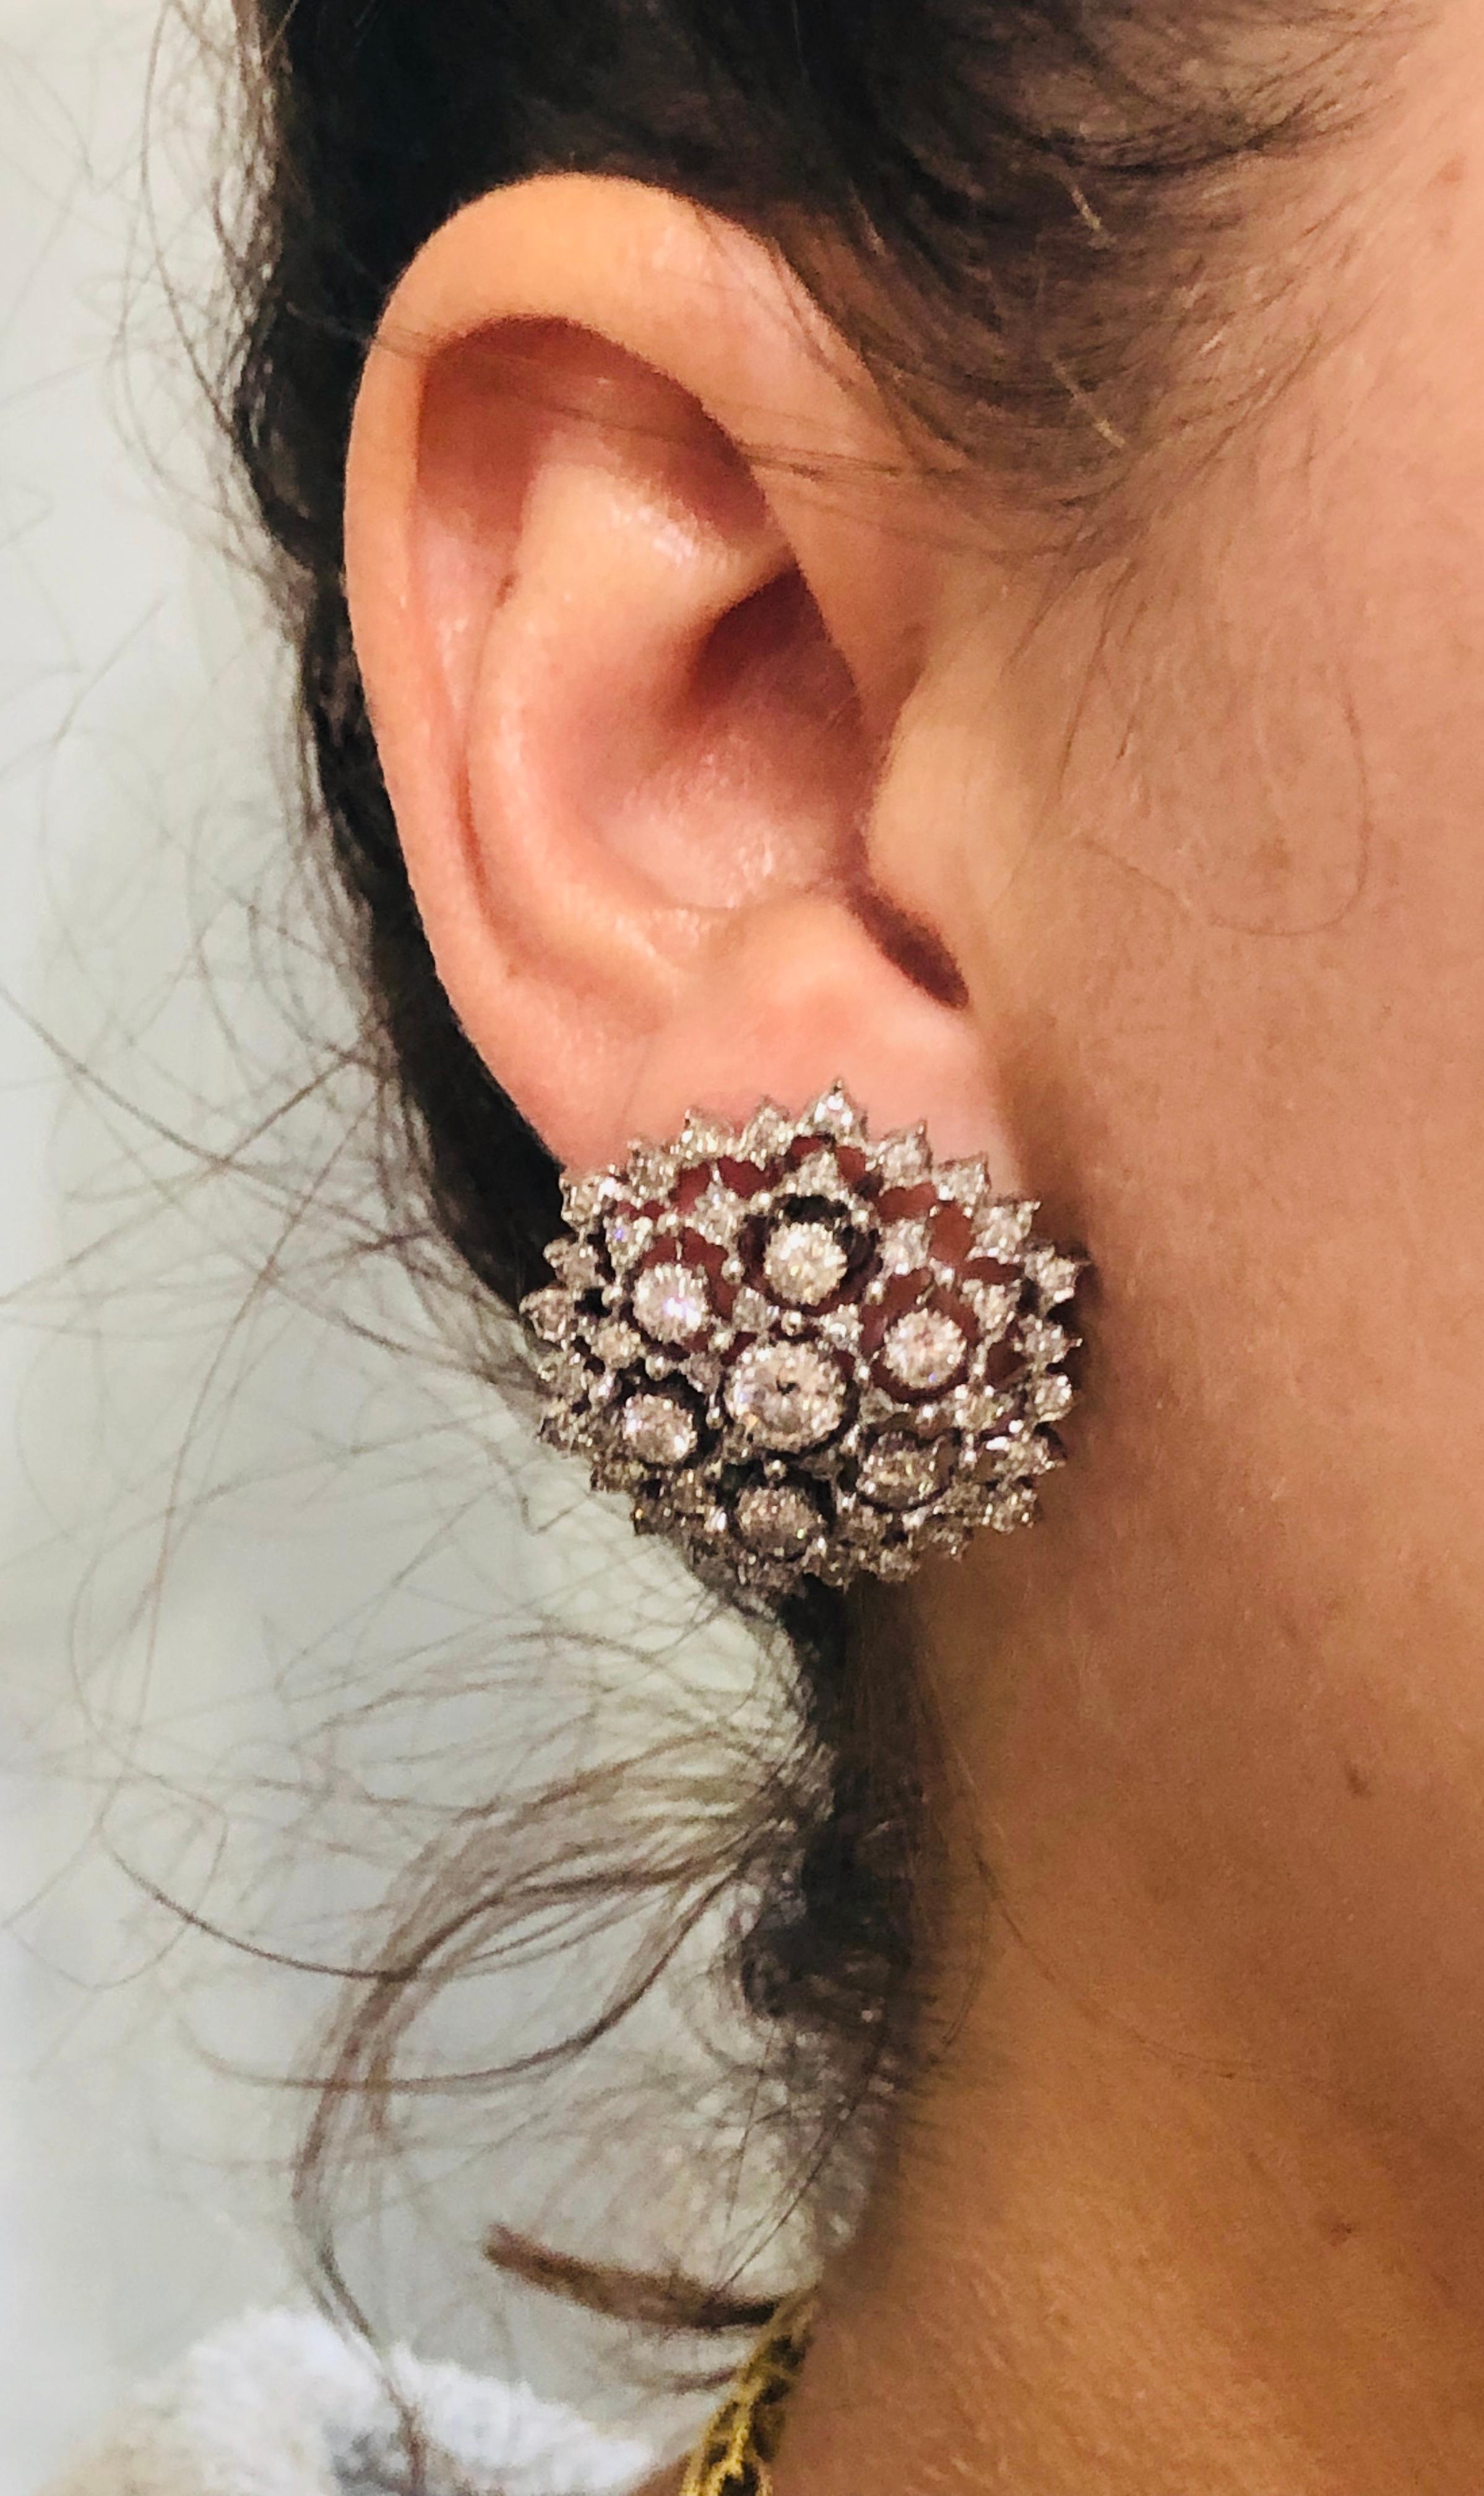 Clips d'oreilles classiques et intemporels créés par Buccellati en Italie dans les années 1960. 
Féminines, portables et chics, les boucles d'oreilles s'ajoutent à votre collection de bijoux.
Réalisé en or blanc 18 carats et serti de diamants ronds